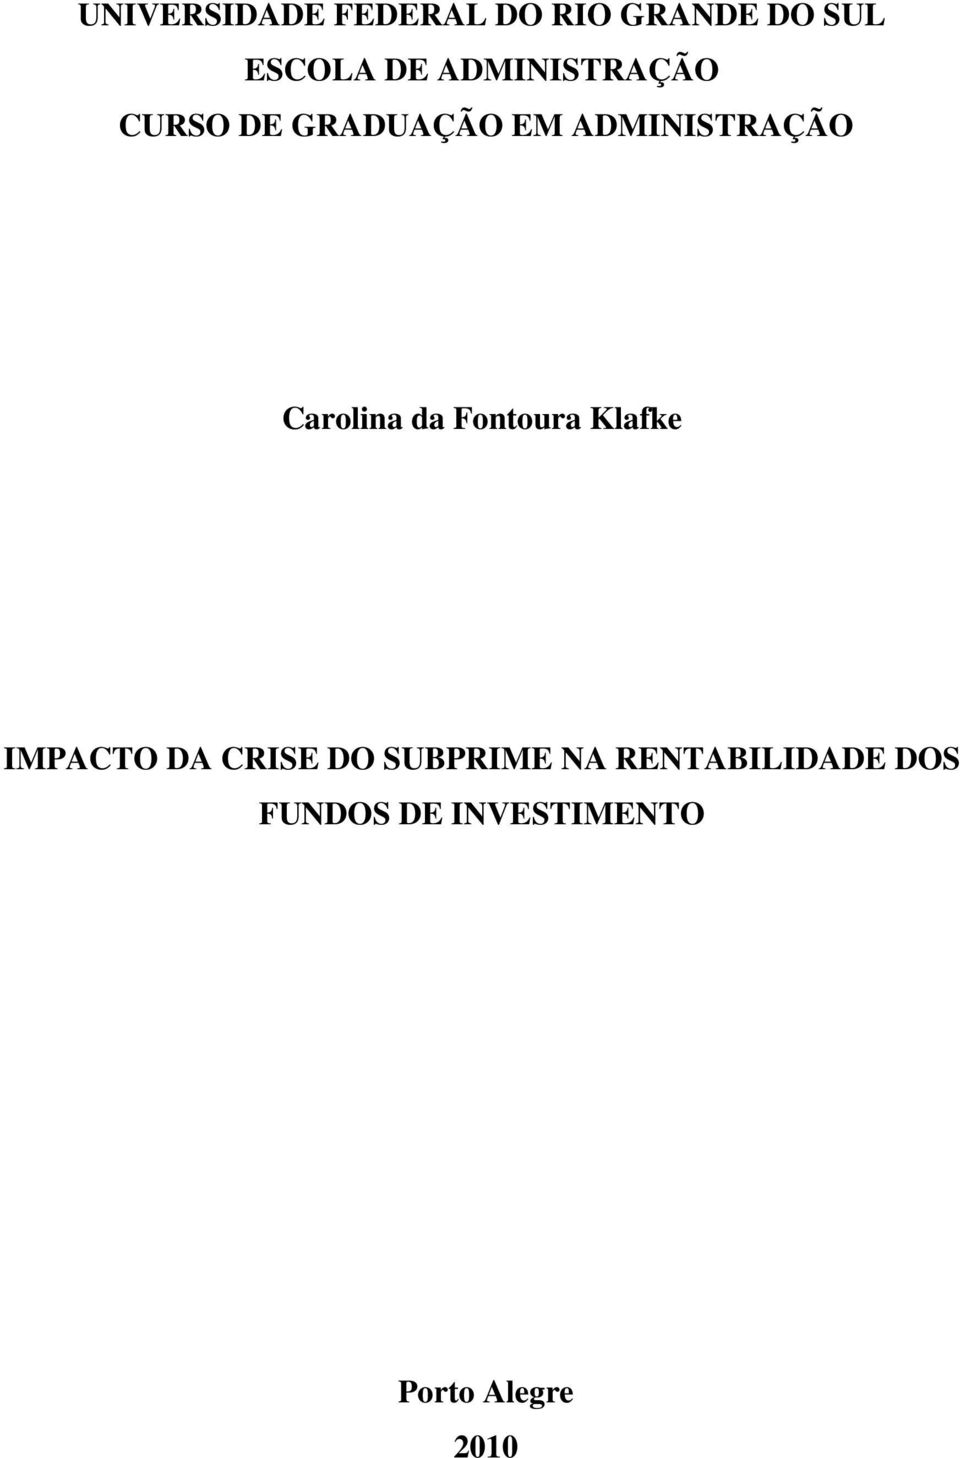 Carolina da Fontoura Klafke IMPACTO DA CRISE DO